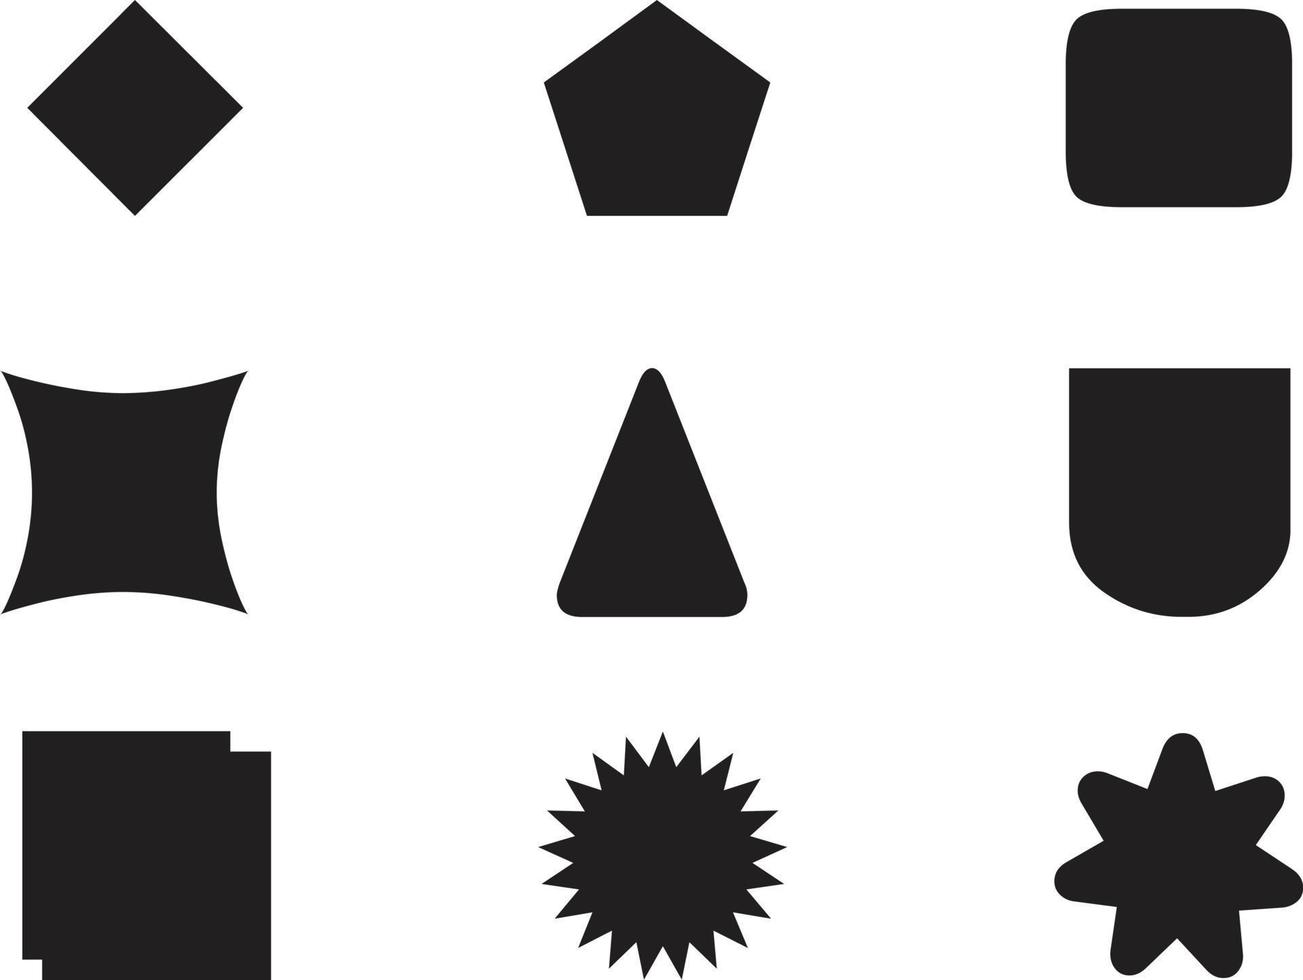 geometrische Formen schwarze Silhouette Icon-Set. umriss cartoon abstrakte leere vorlage für sprechblase, nachrichtenballon, textnotizabzeichen, preisschild, papierspeicheraufkleber, denken sie wolkenrahmen, webbanner vektor